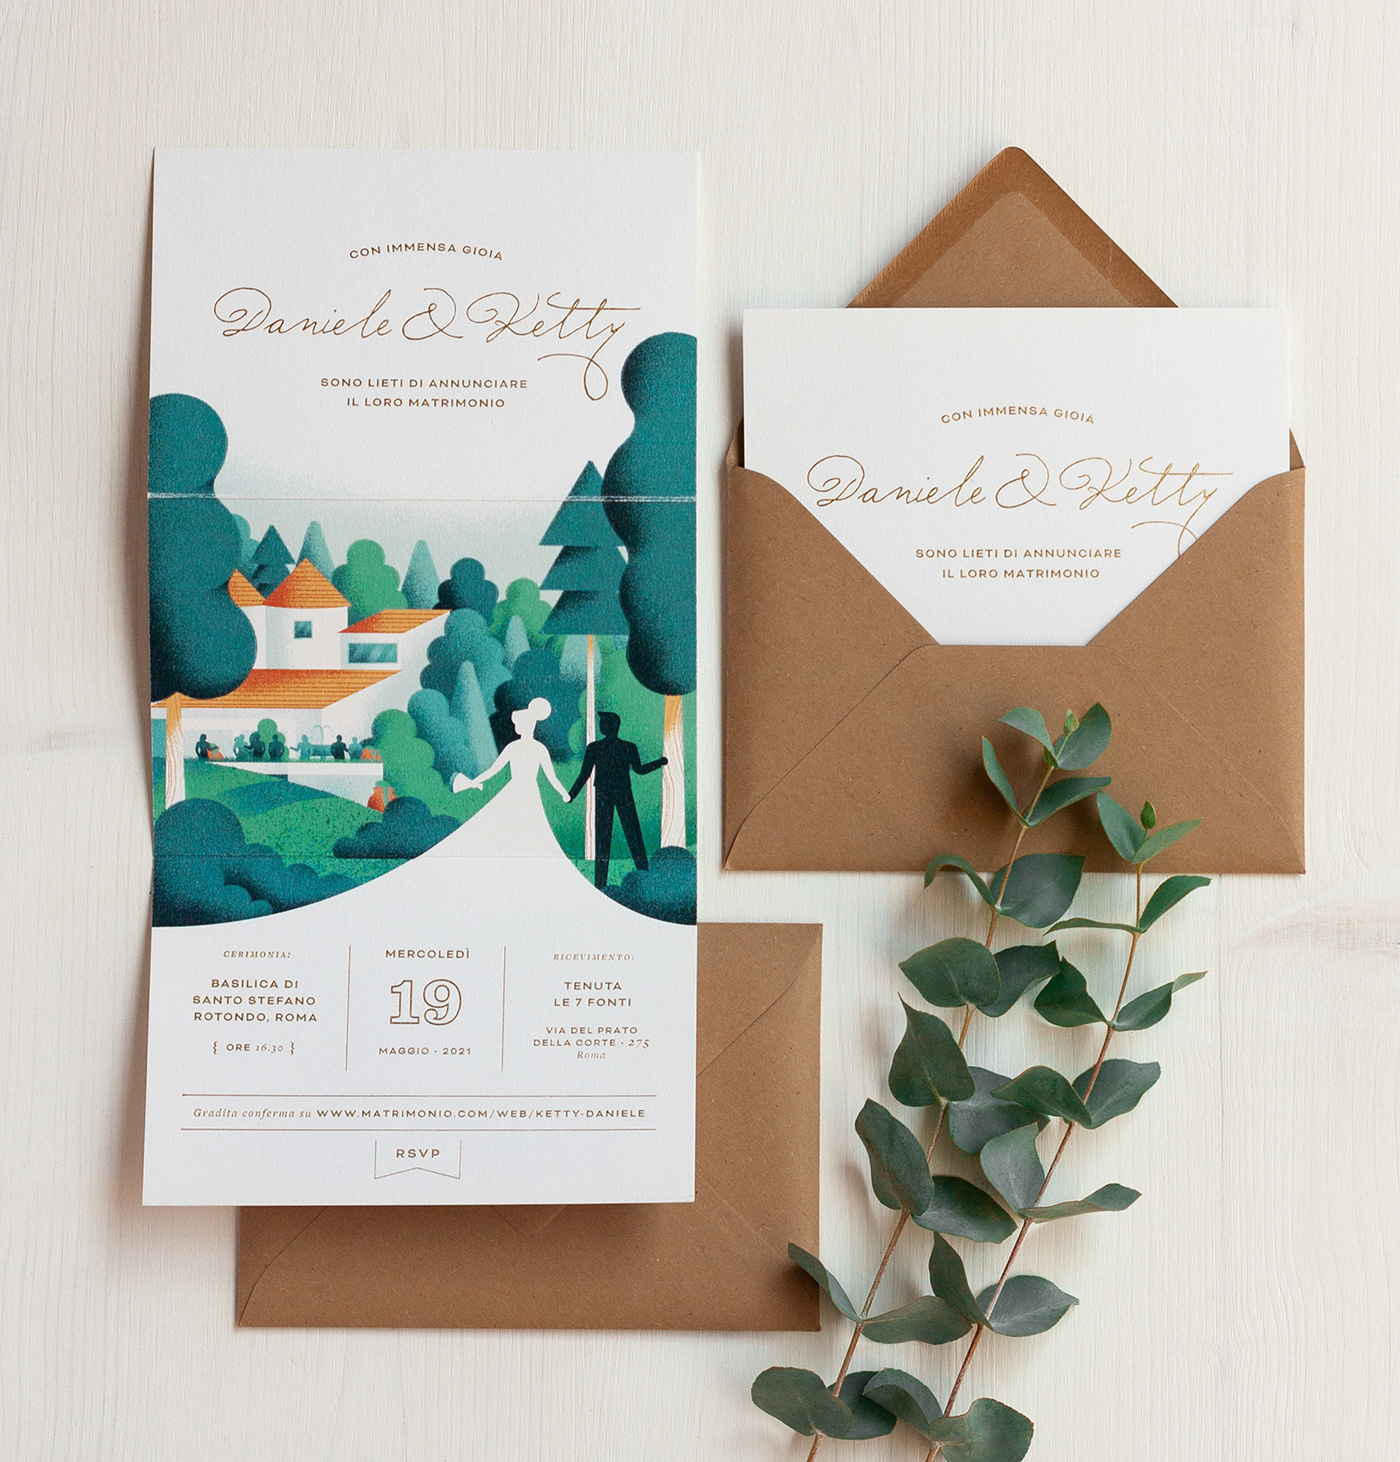 Invitation Card invite invite design invite illustration marriage print wedding wedding cards wedding invitation wedding invite